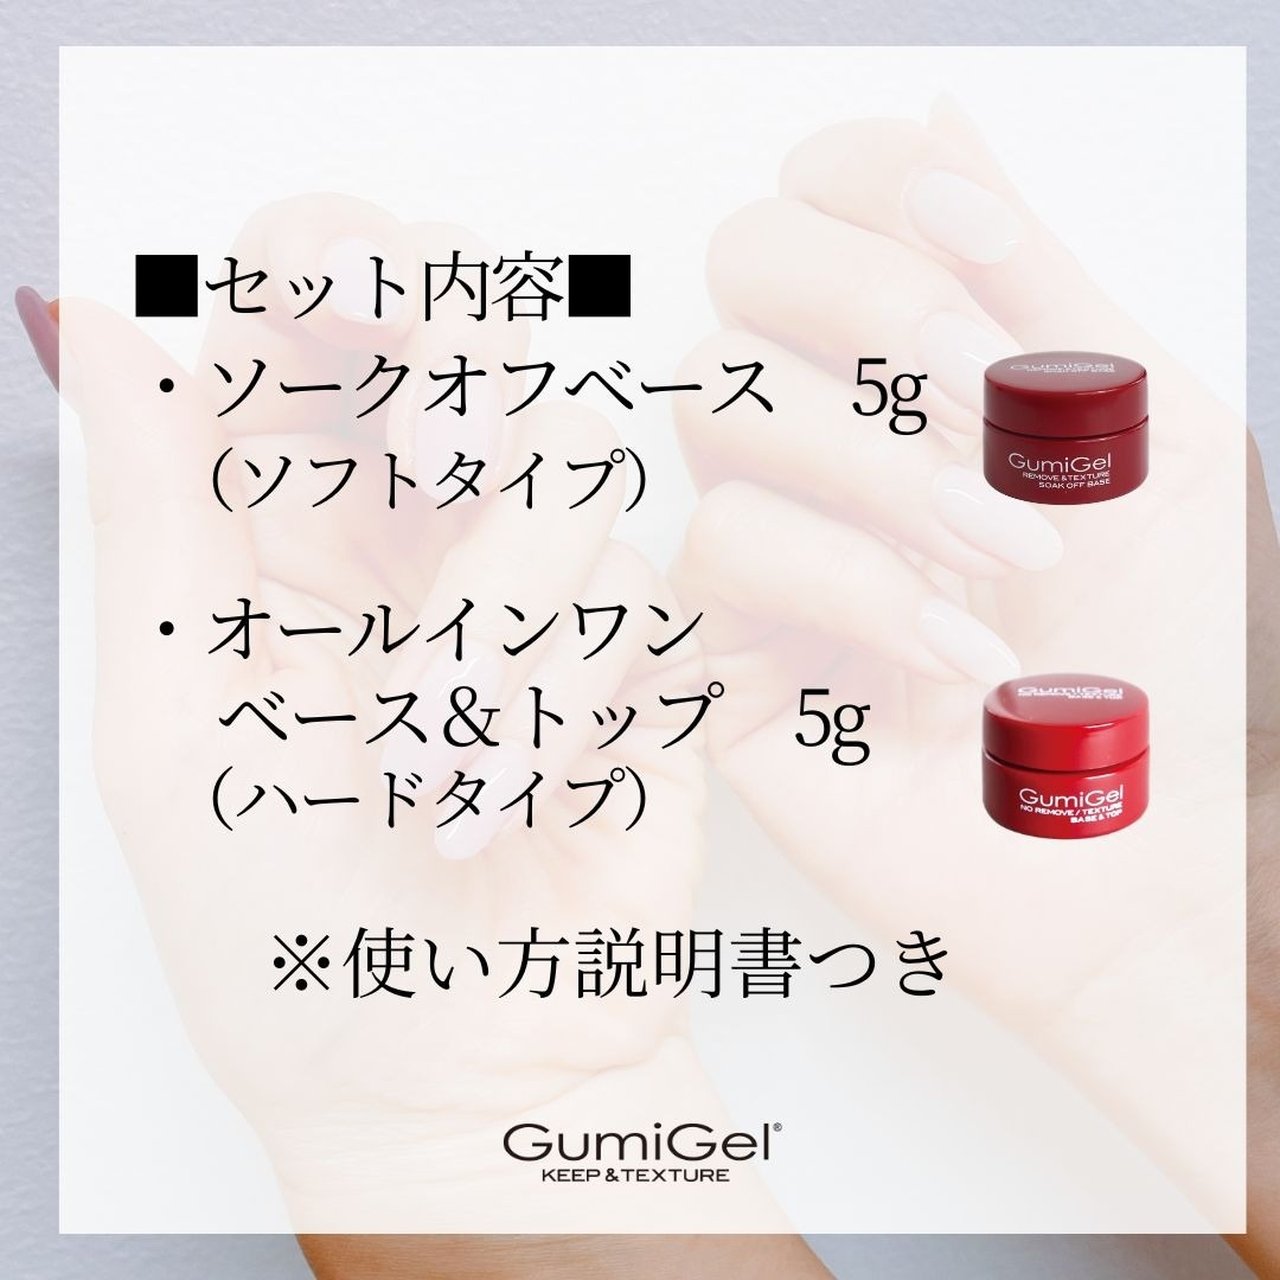 GumiGel グミジェル ソークオフベース 5g 【楽天ランキング1位 ...